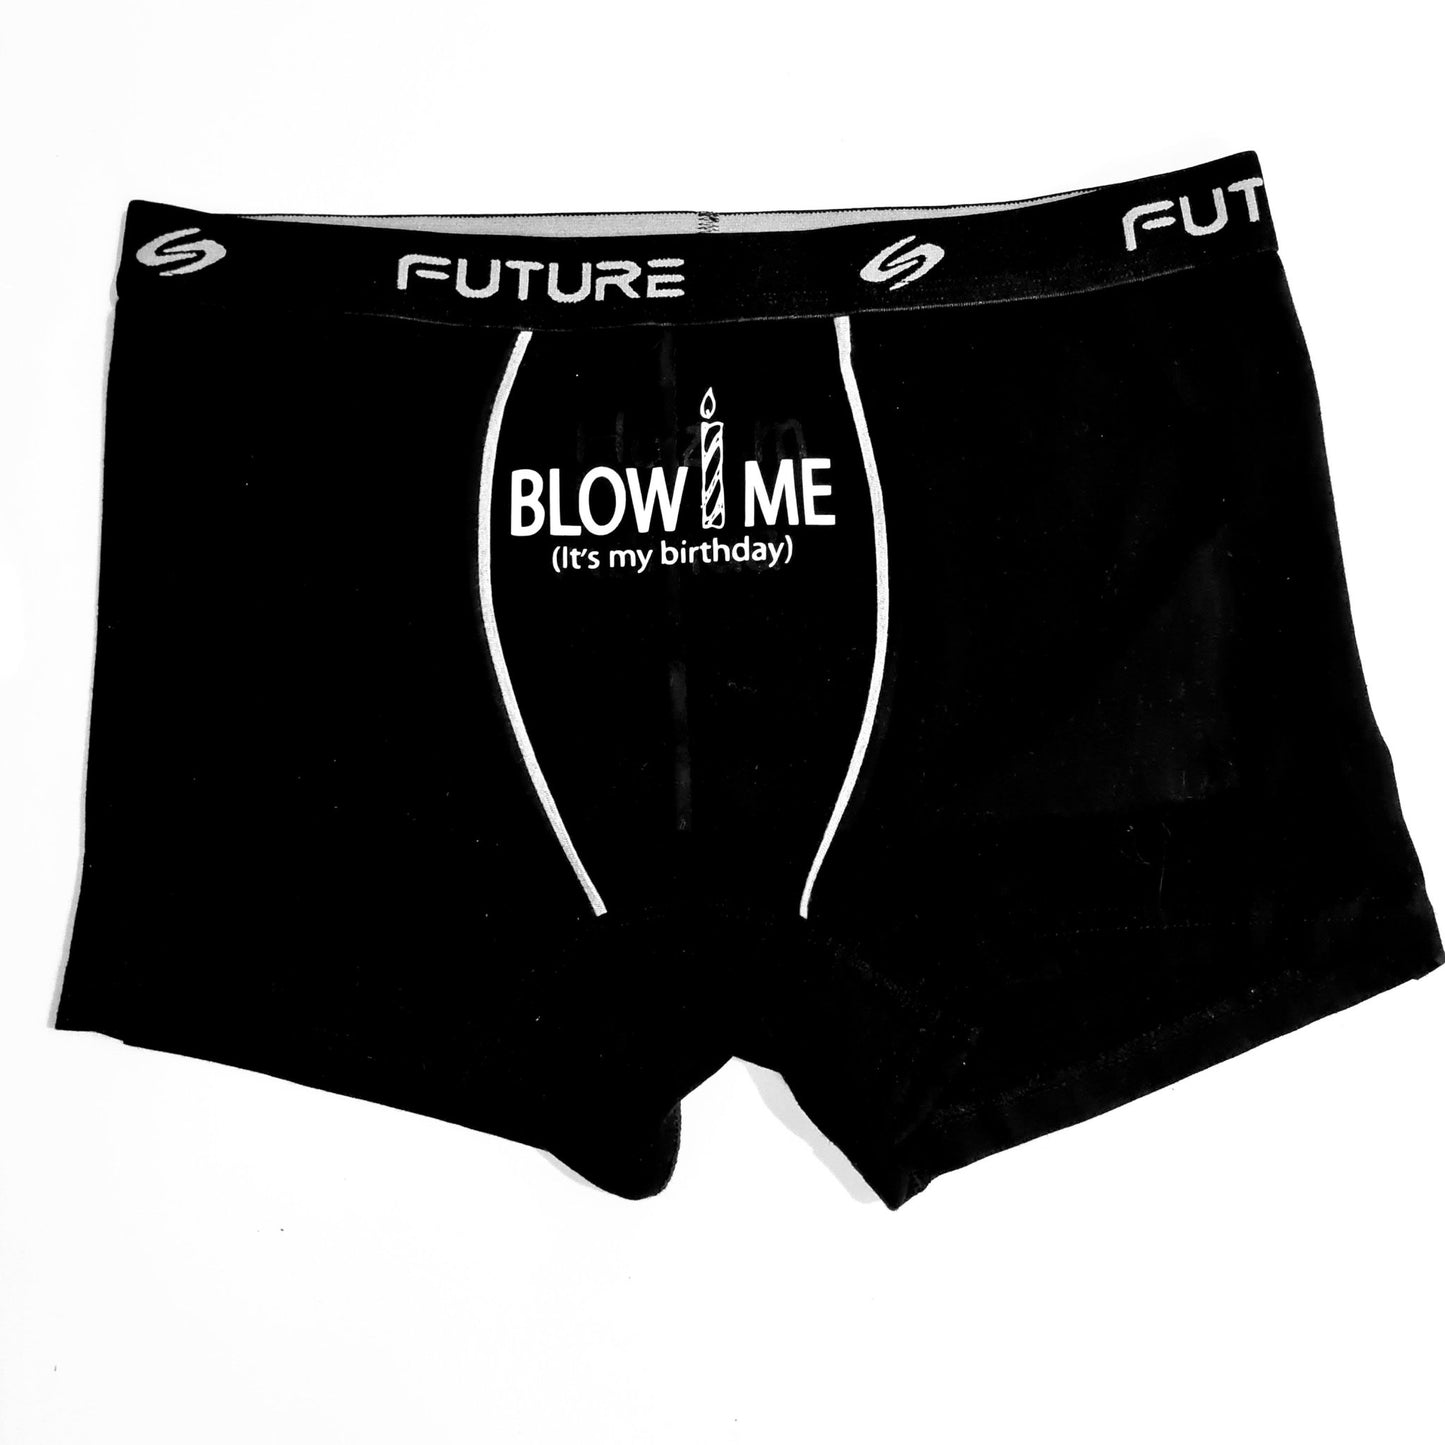 Men underwear - Blow - Etba3lly